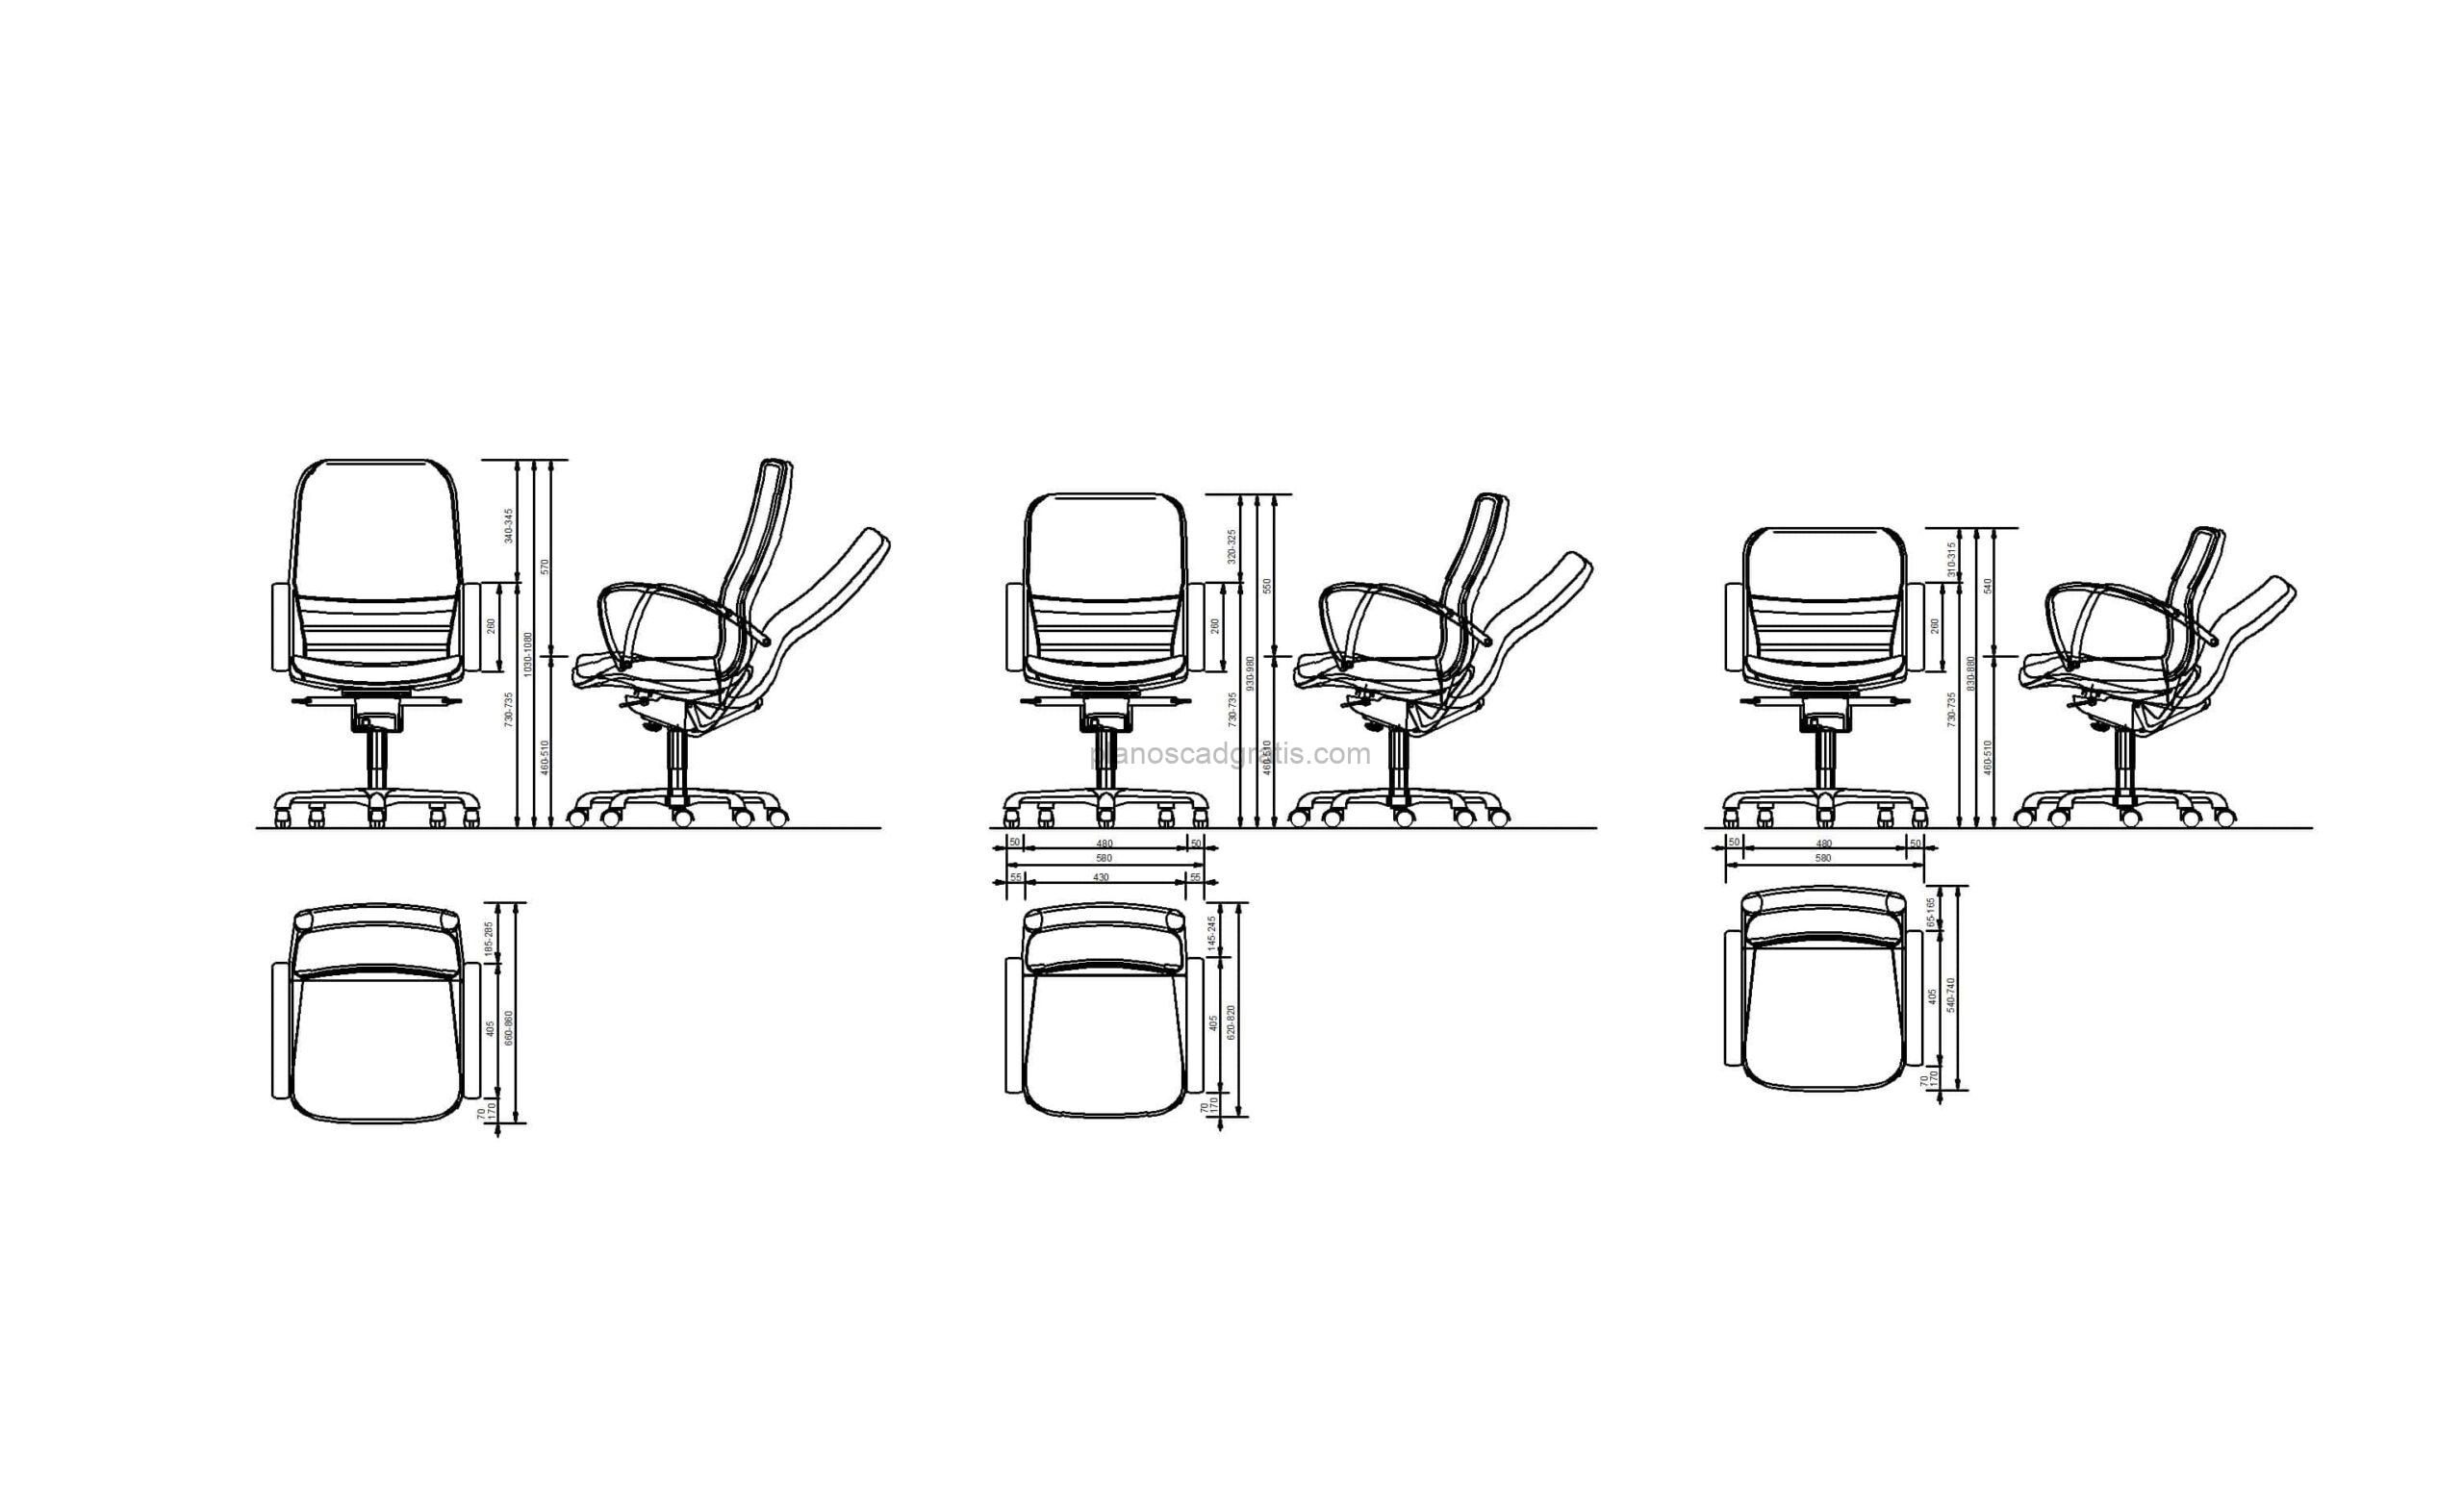 bloque de autocad en formato dwg de sillas de oficina, vistas en planta y elevación, para descarga gratis